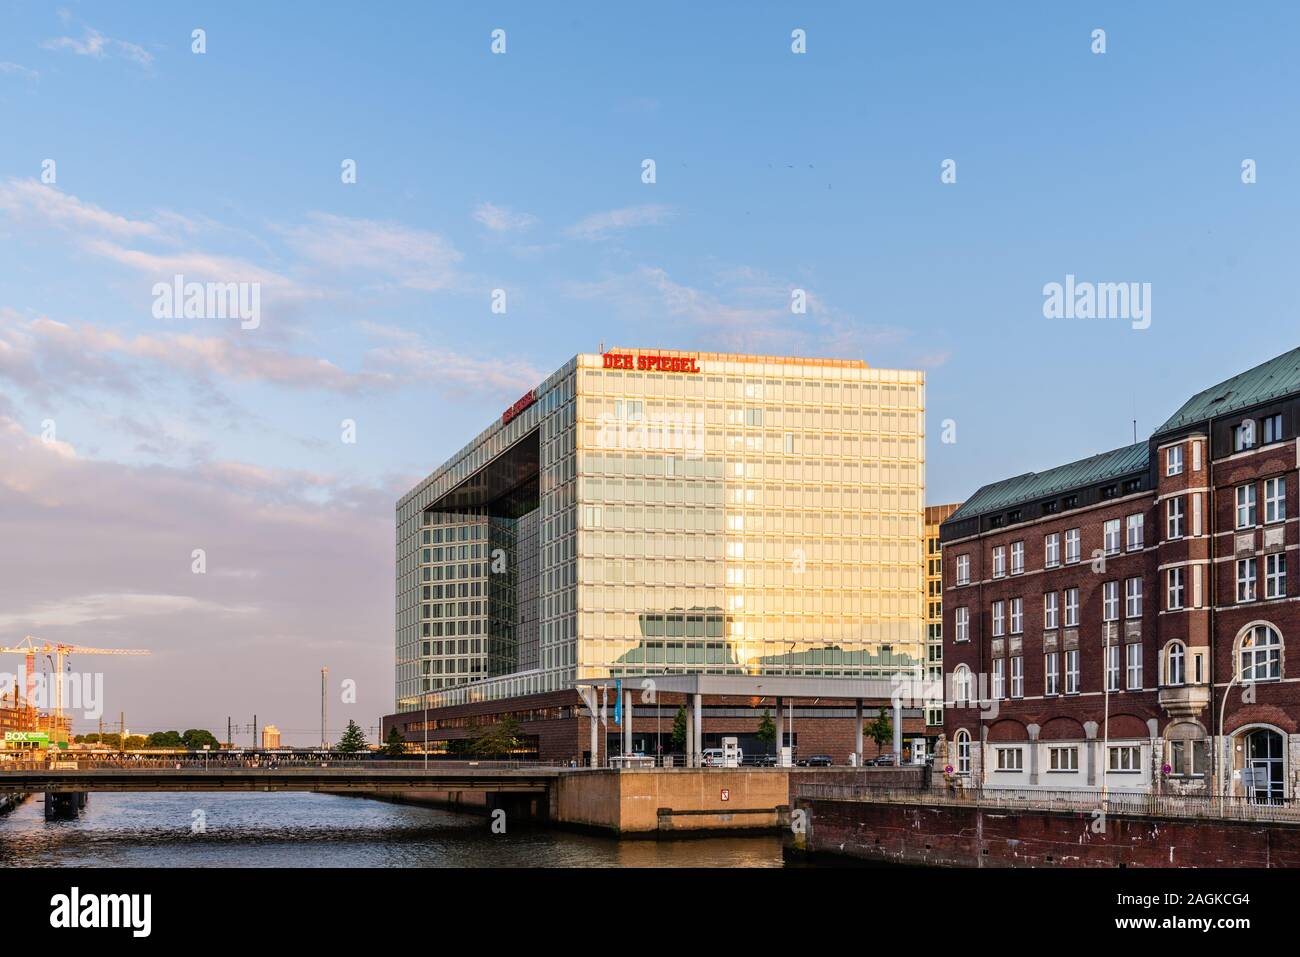 Hamburg, Deutschland - 3. August 2019: Der Spiegel headqurter in Hamburg. Es ist eine deutsche Wochenmagazin Stockfoto